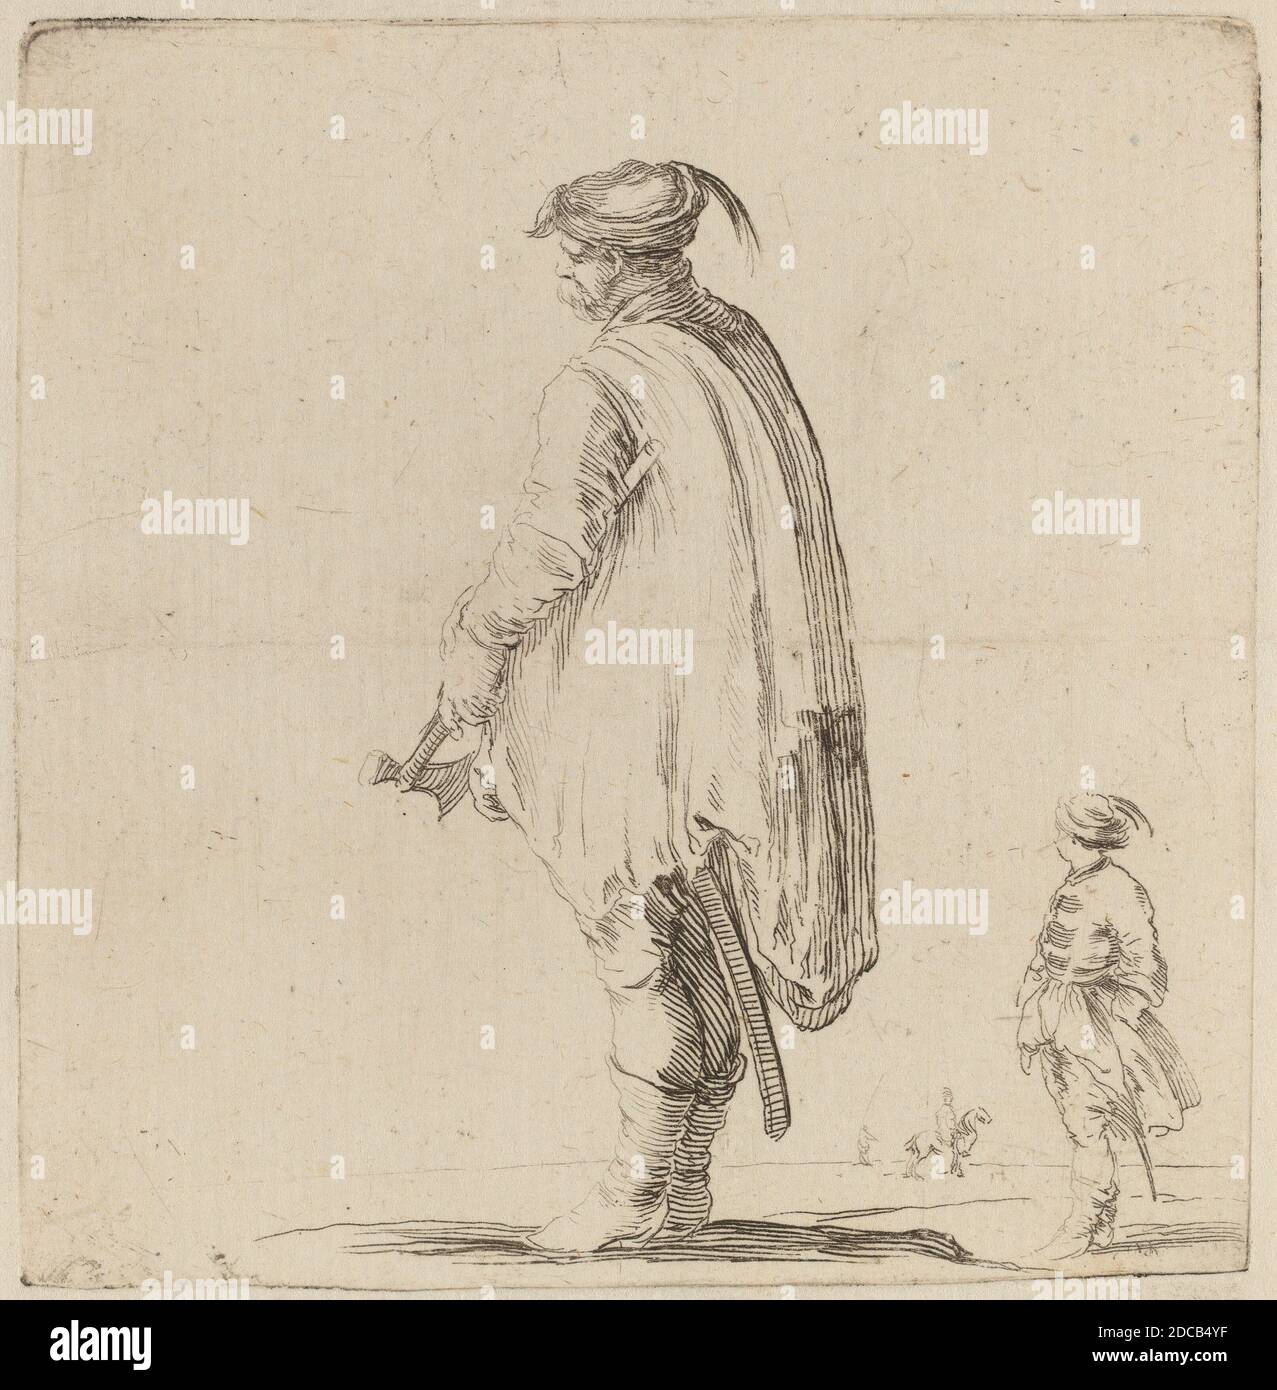 Stefano della Bella, (artista), fiorentino, 1610 - 1664, Polo con la mano sinistra, quadrante Medicea, vol.3 (1986.50.11-108), (serie), incisione su carta deposte Foto Stock